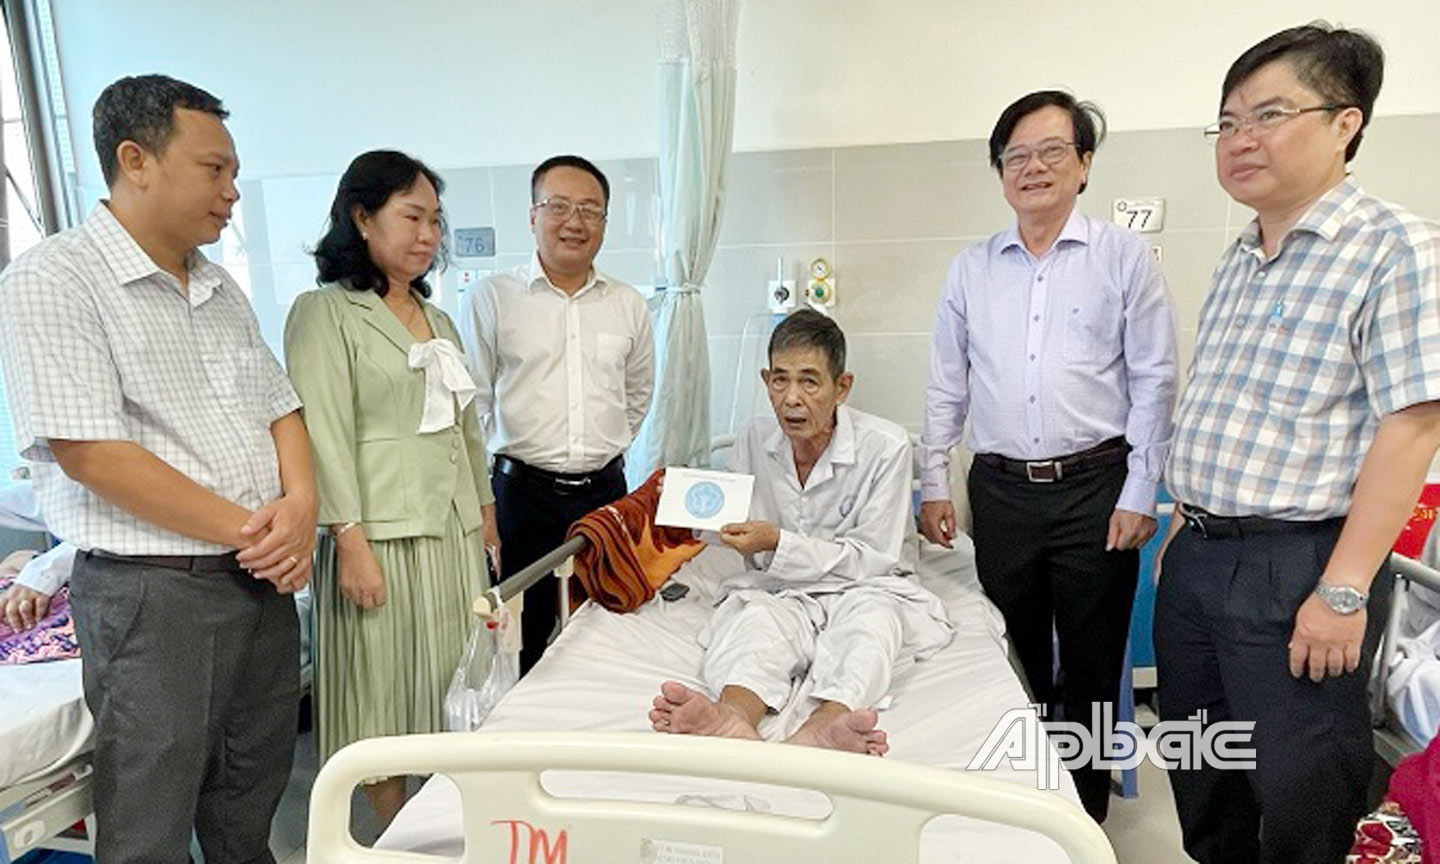  Phó Giám đốc BHXH tỉnh Huỳnh Hữu Phúc cùng lãnh đạo Bệnh viện đa khoa Tiền Giang thăm hỏi, tặng quà cho các bệnh nhân BHYT có hoàn cảnh khó khăn đang điều trị. 